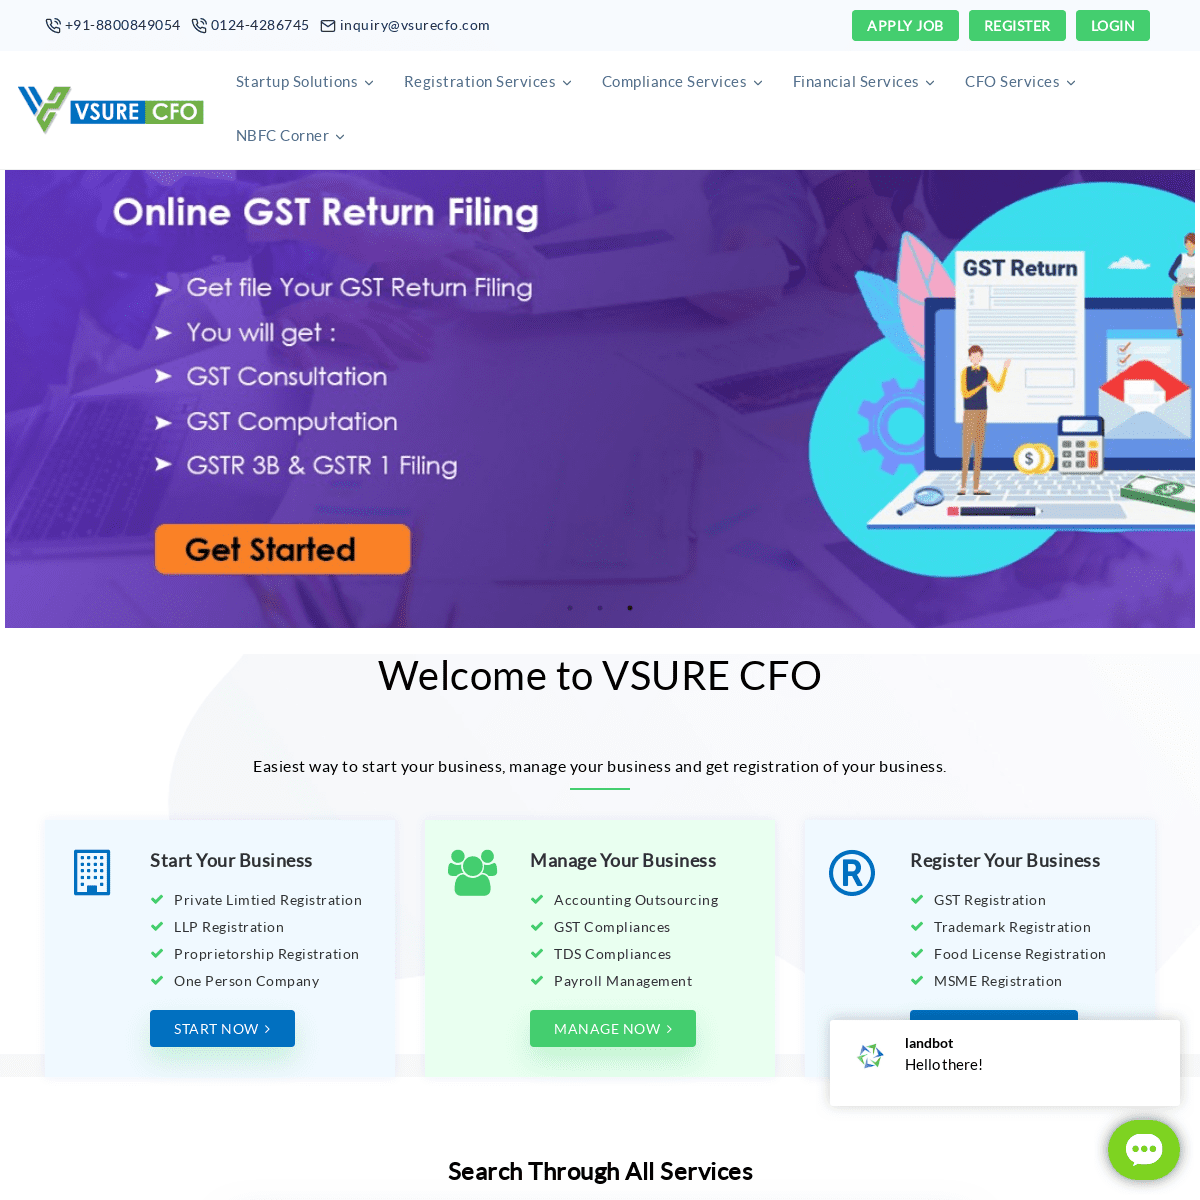 A complete backup of vsurecfo.com